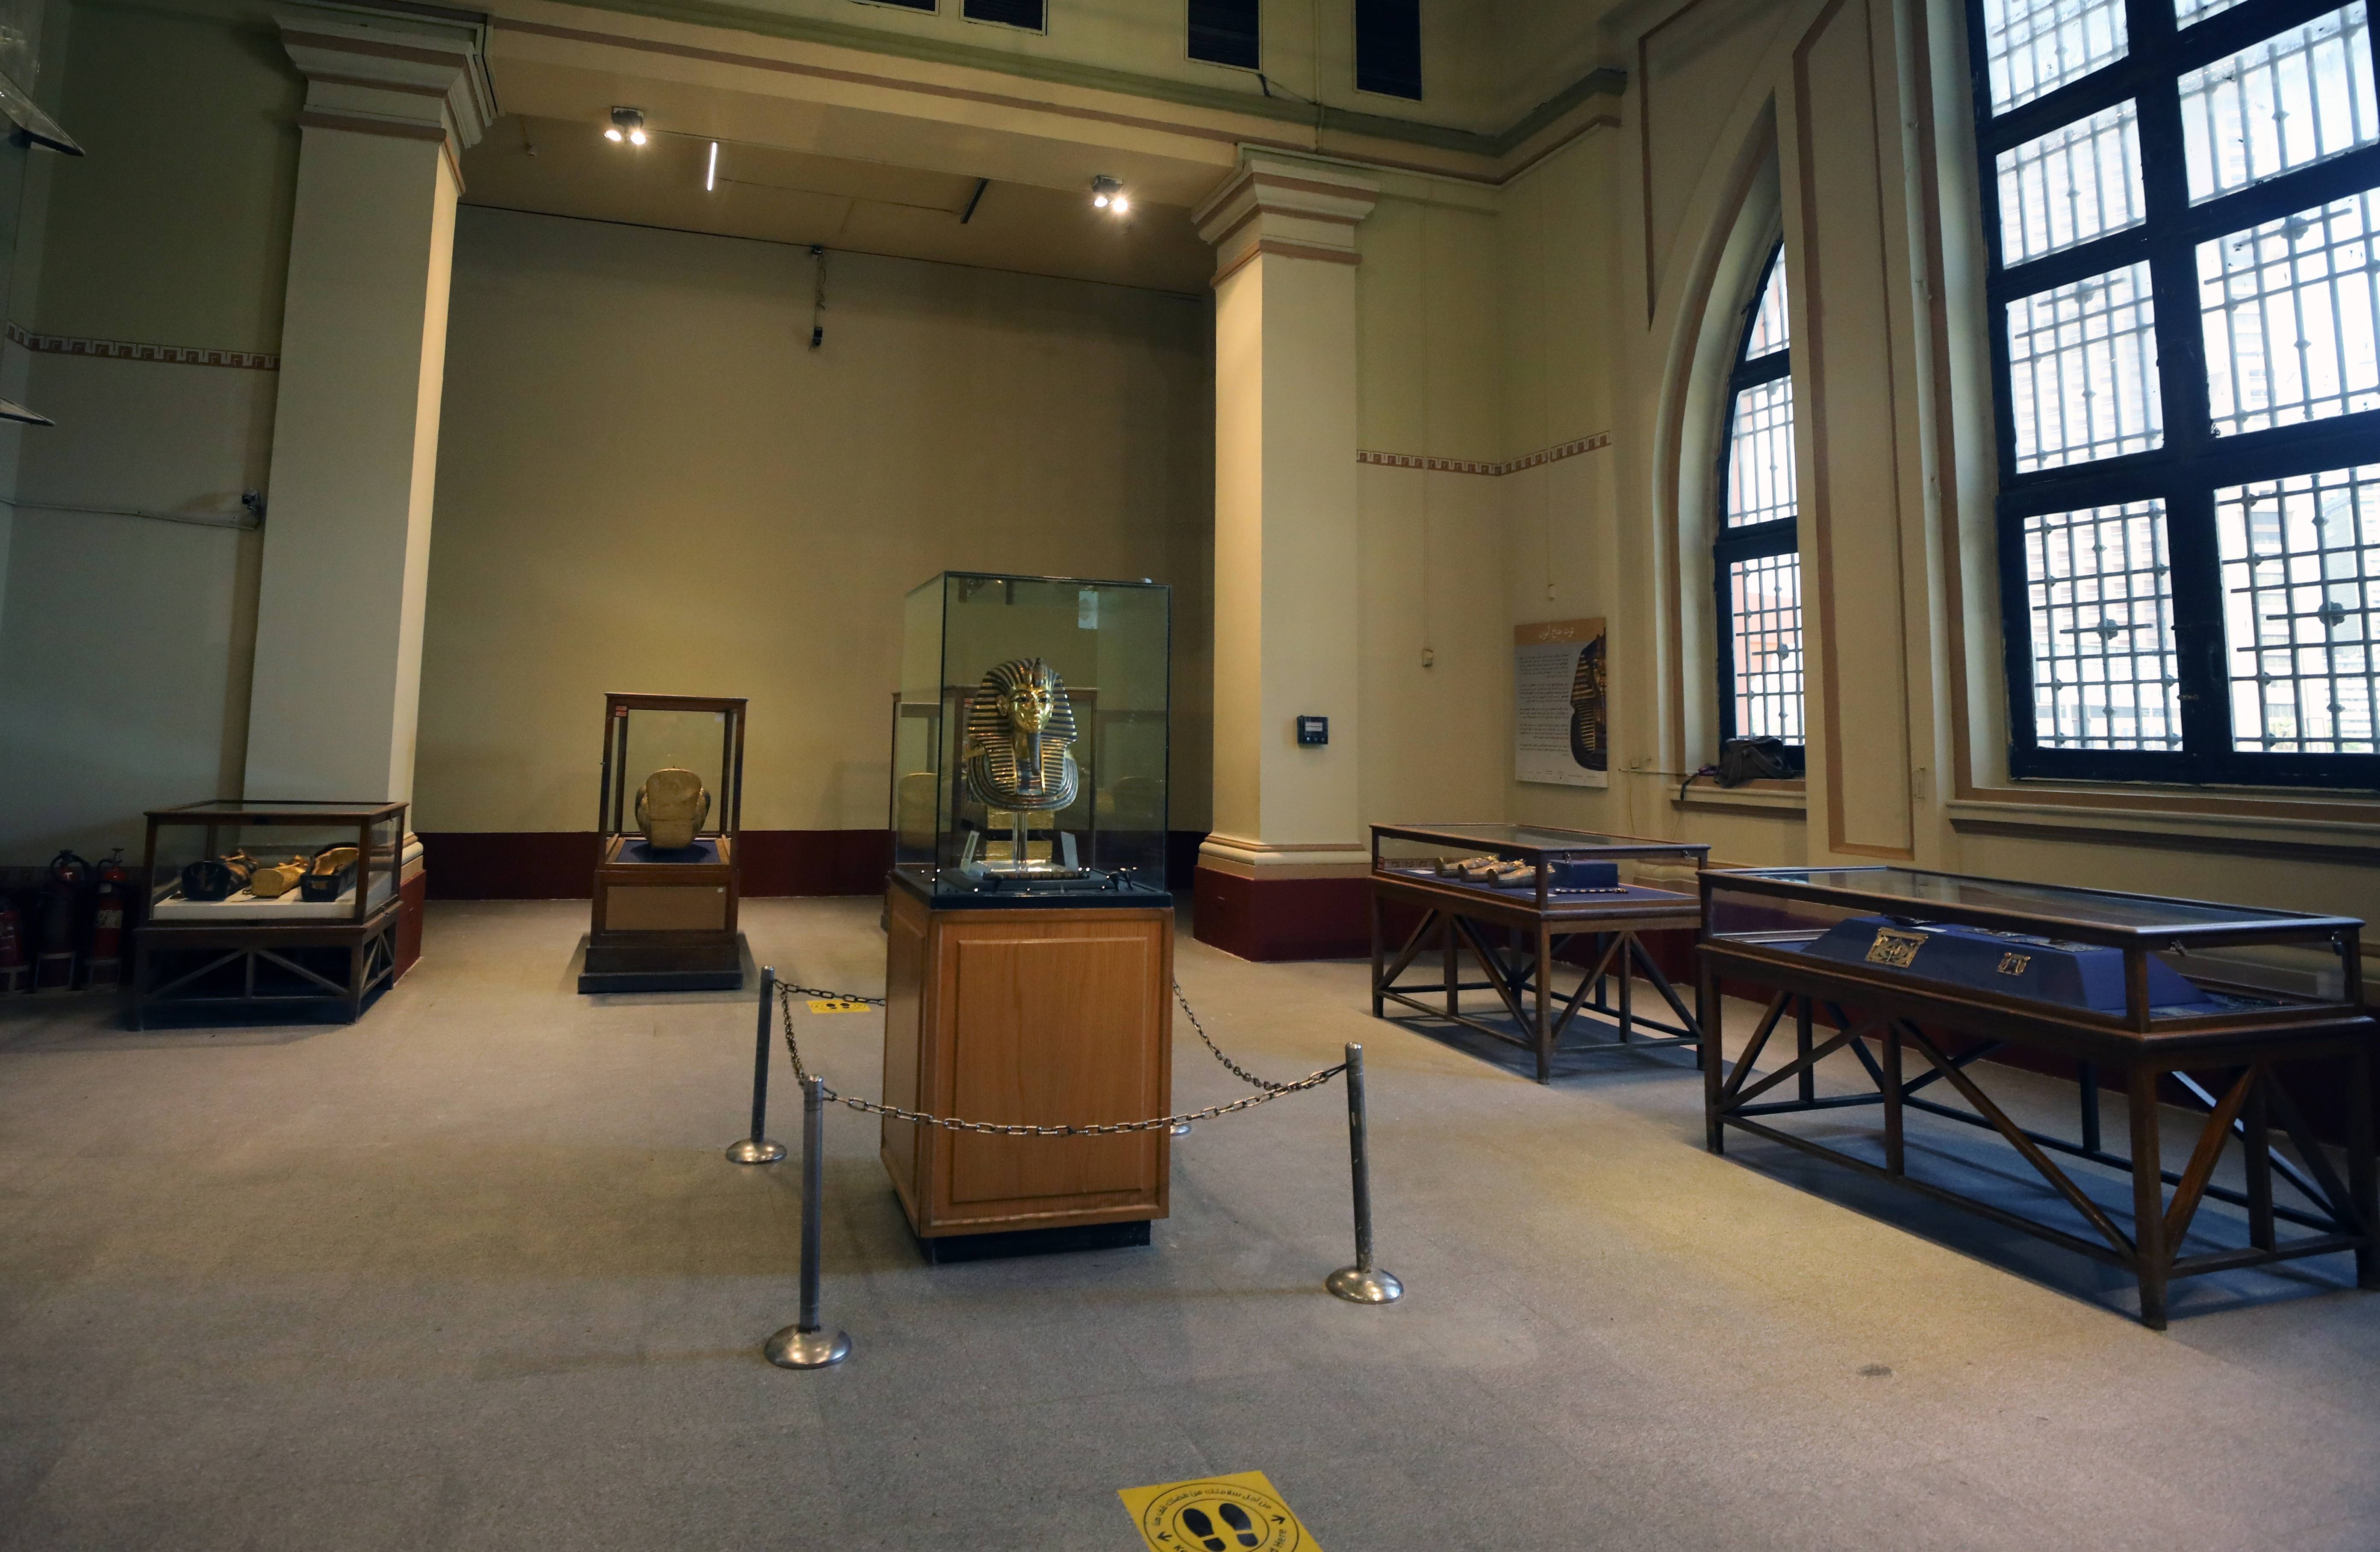 埃及博物馆重新开放